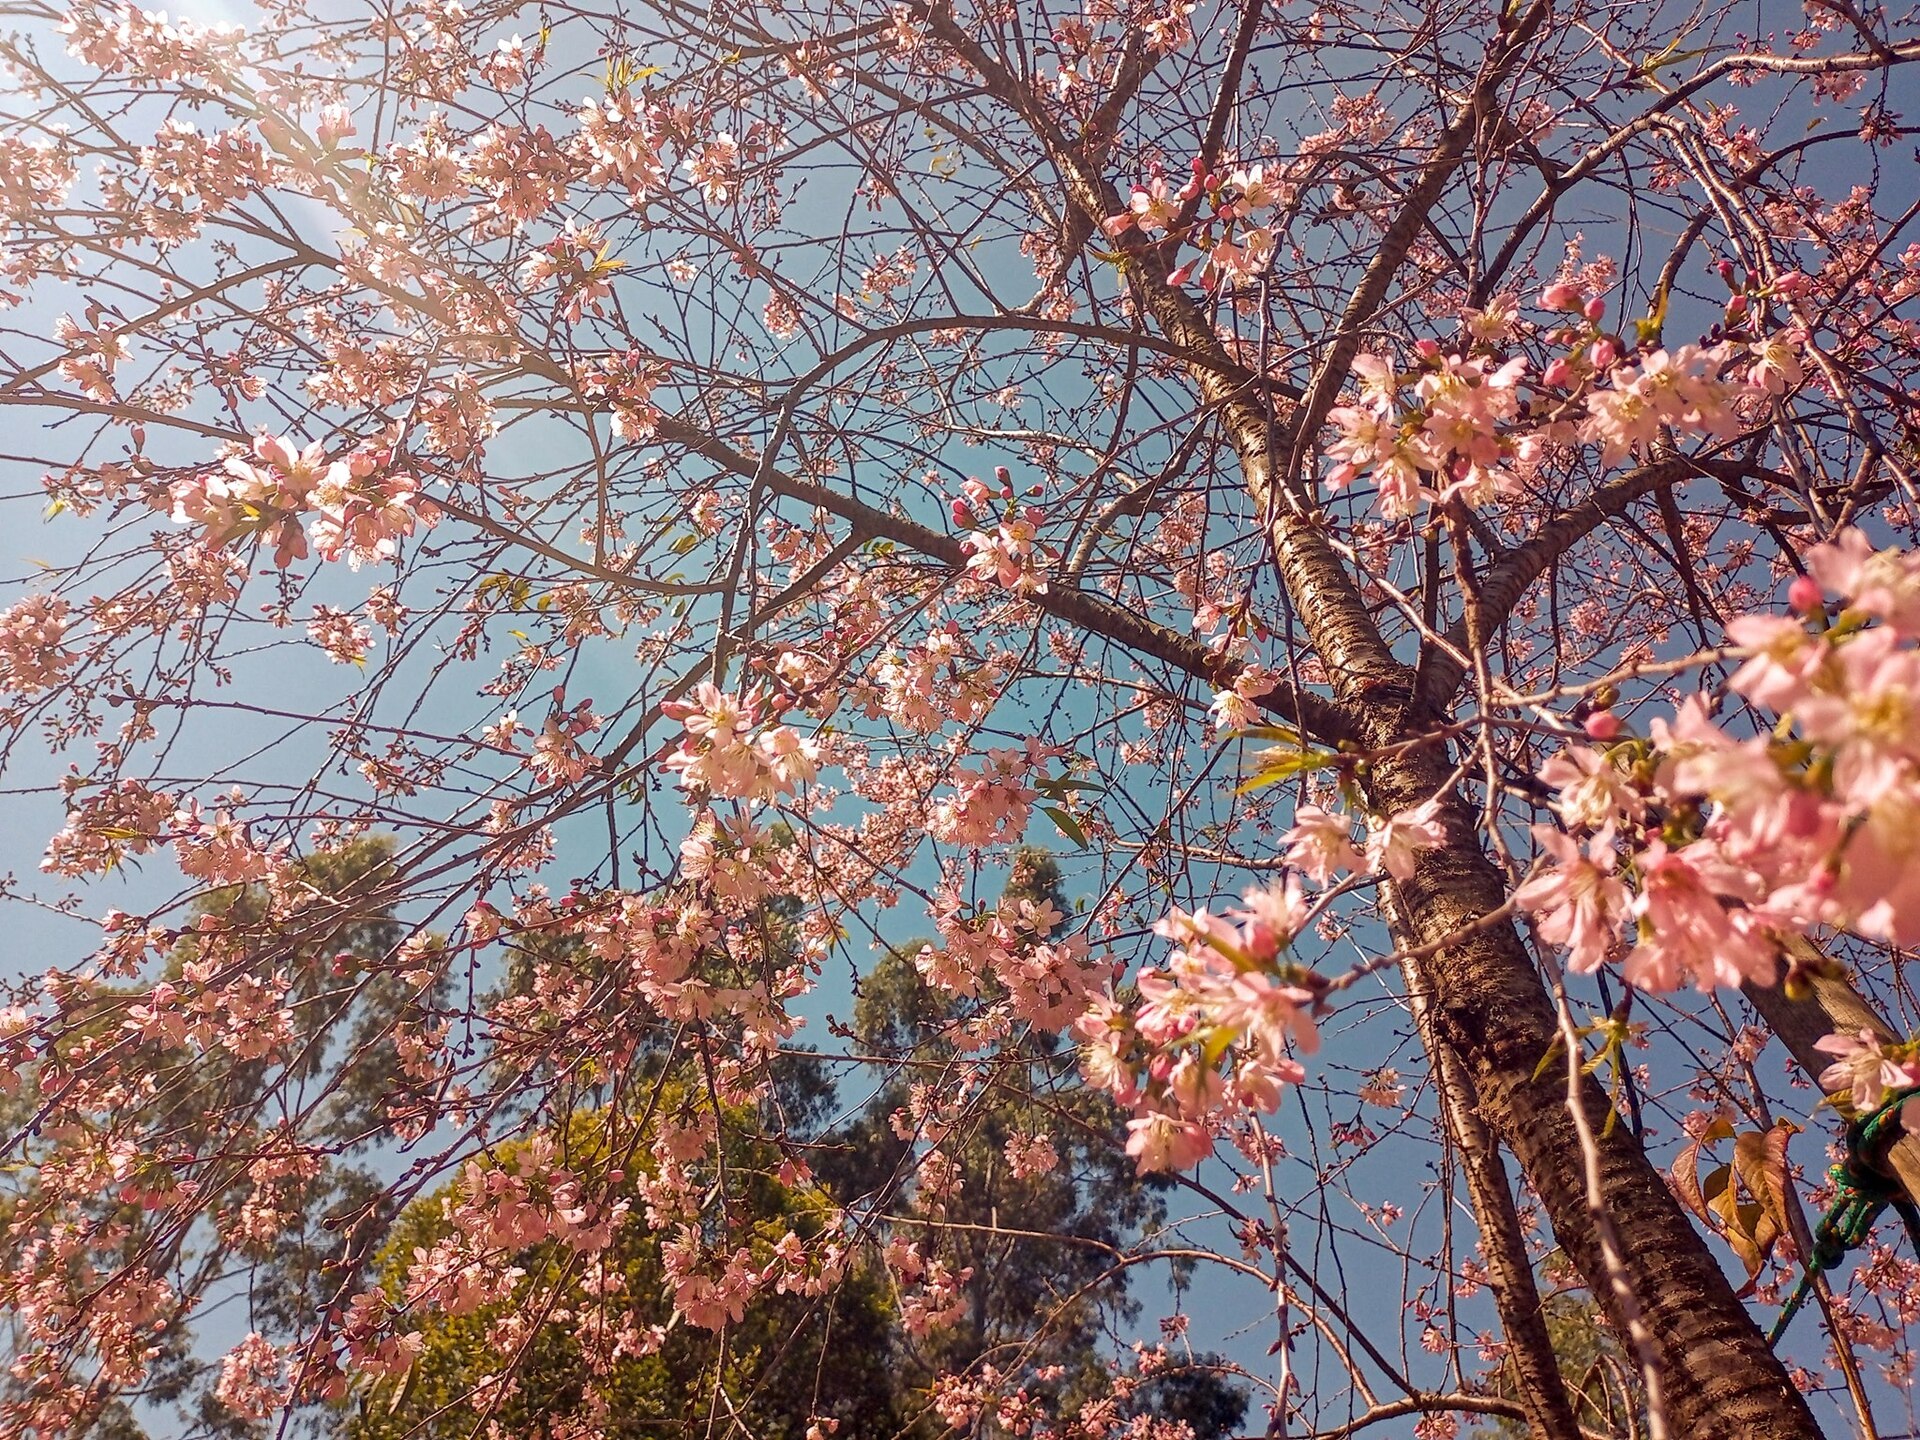 Florada das cerejeiras é uma das atrações em Brotas (SP)